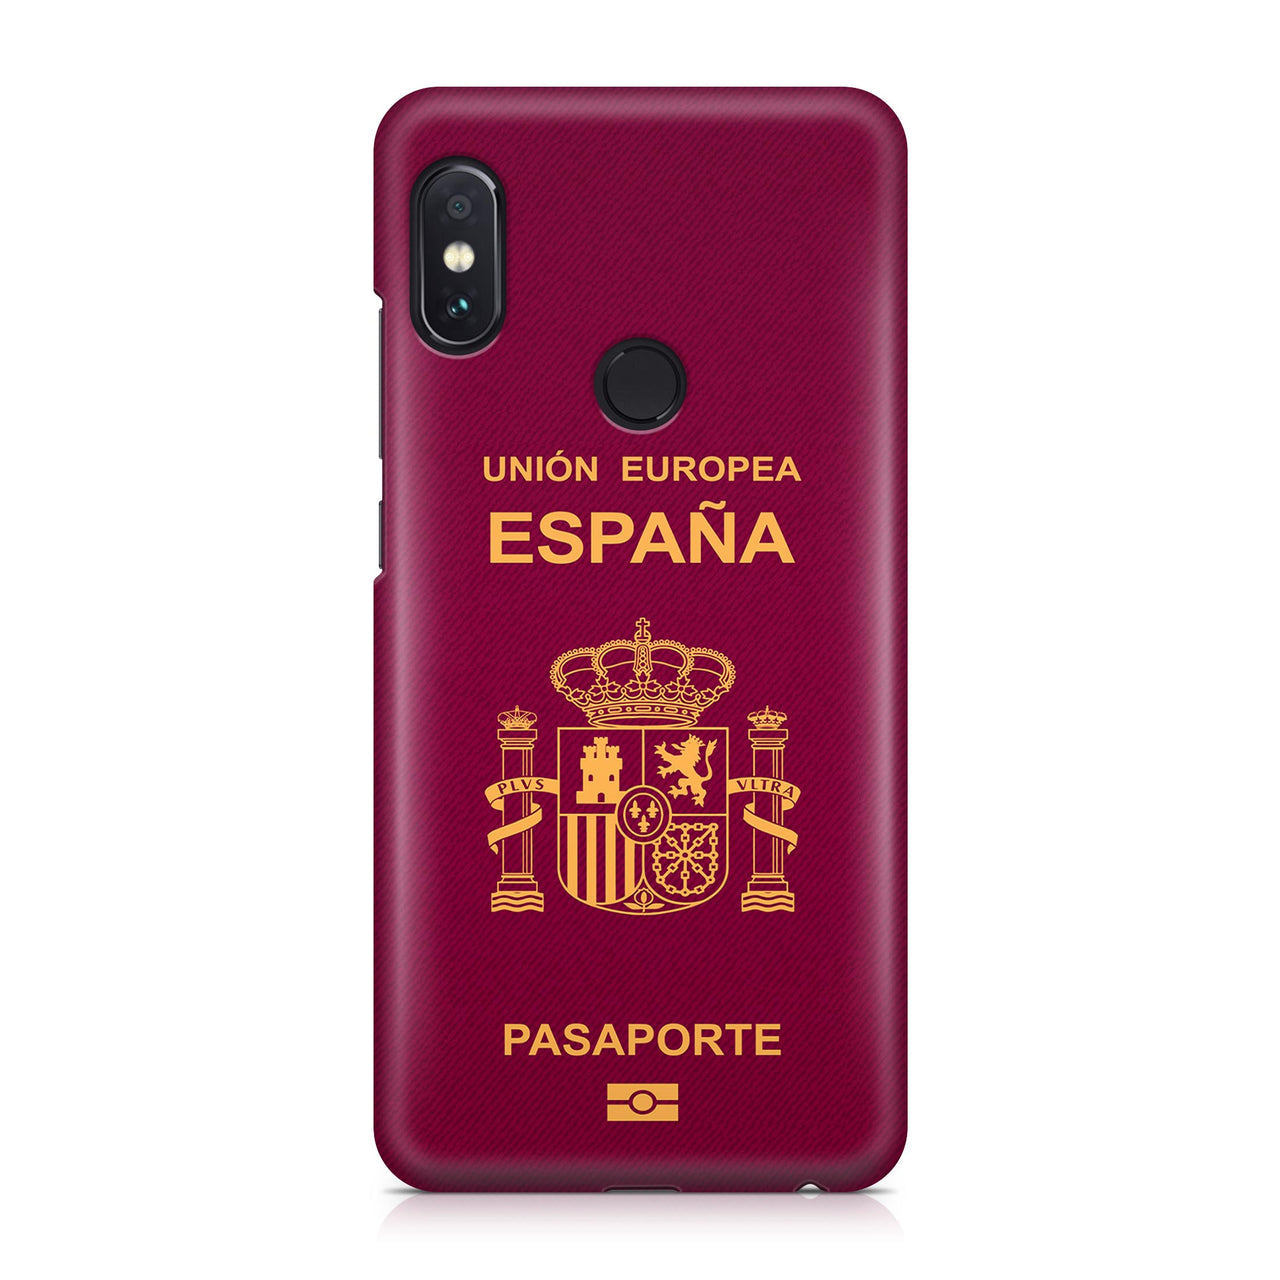 Spain Passport Designed Xiaomi Cases